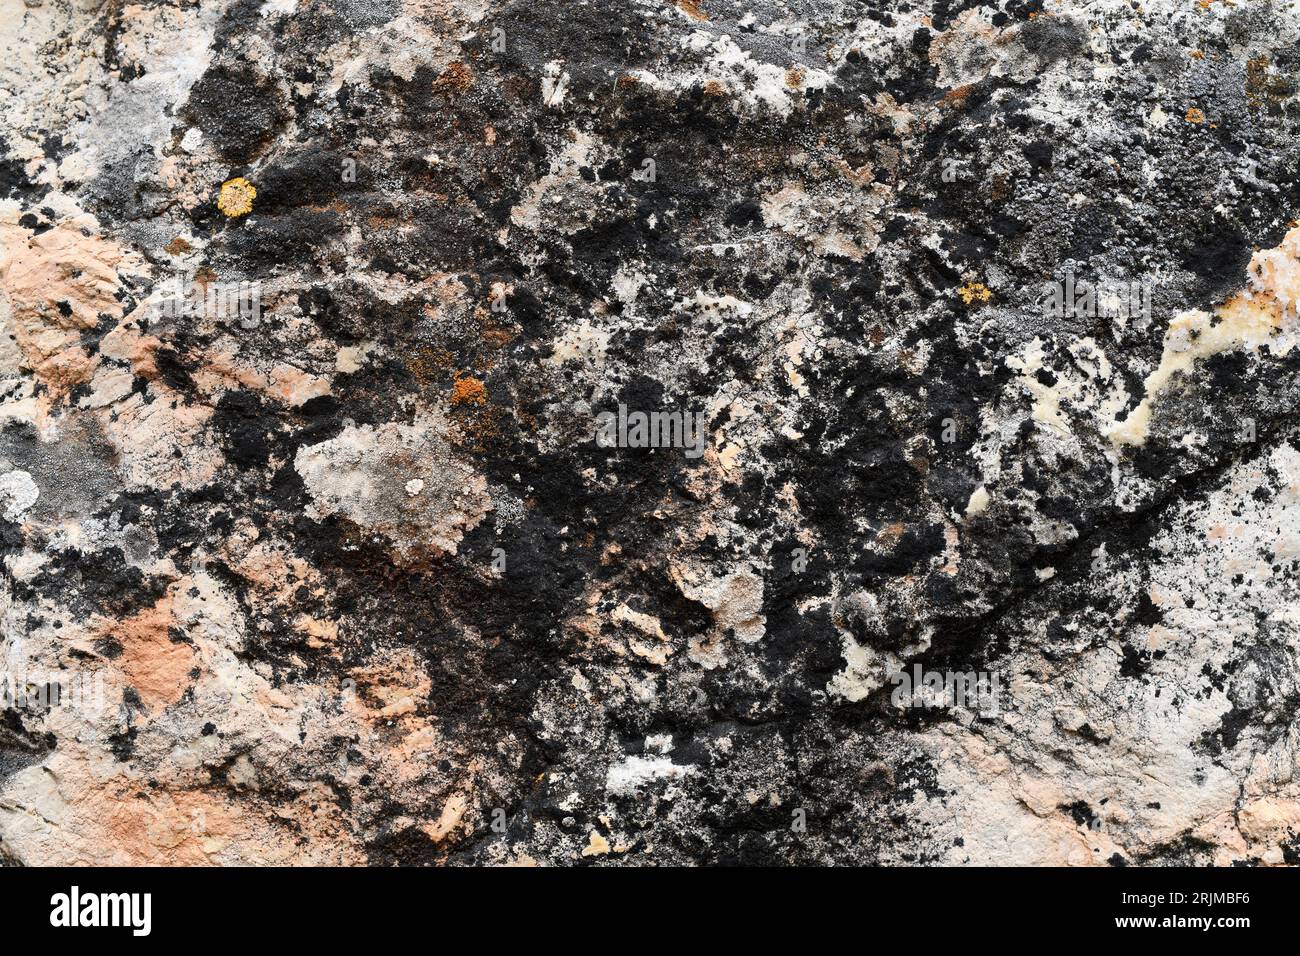 Verrucaria nigrescens ist eine Krustenflechte, die auf kalkhaltigem Gestein wächst. Dieses Foto wurde in Carabias, Guadalajara, Castilla-La Mancha, Spanien aufgenommen. Stockfoto